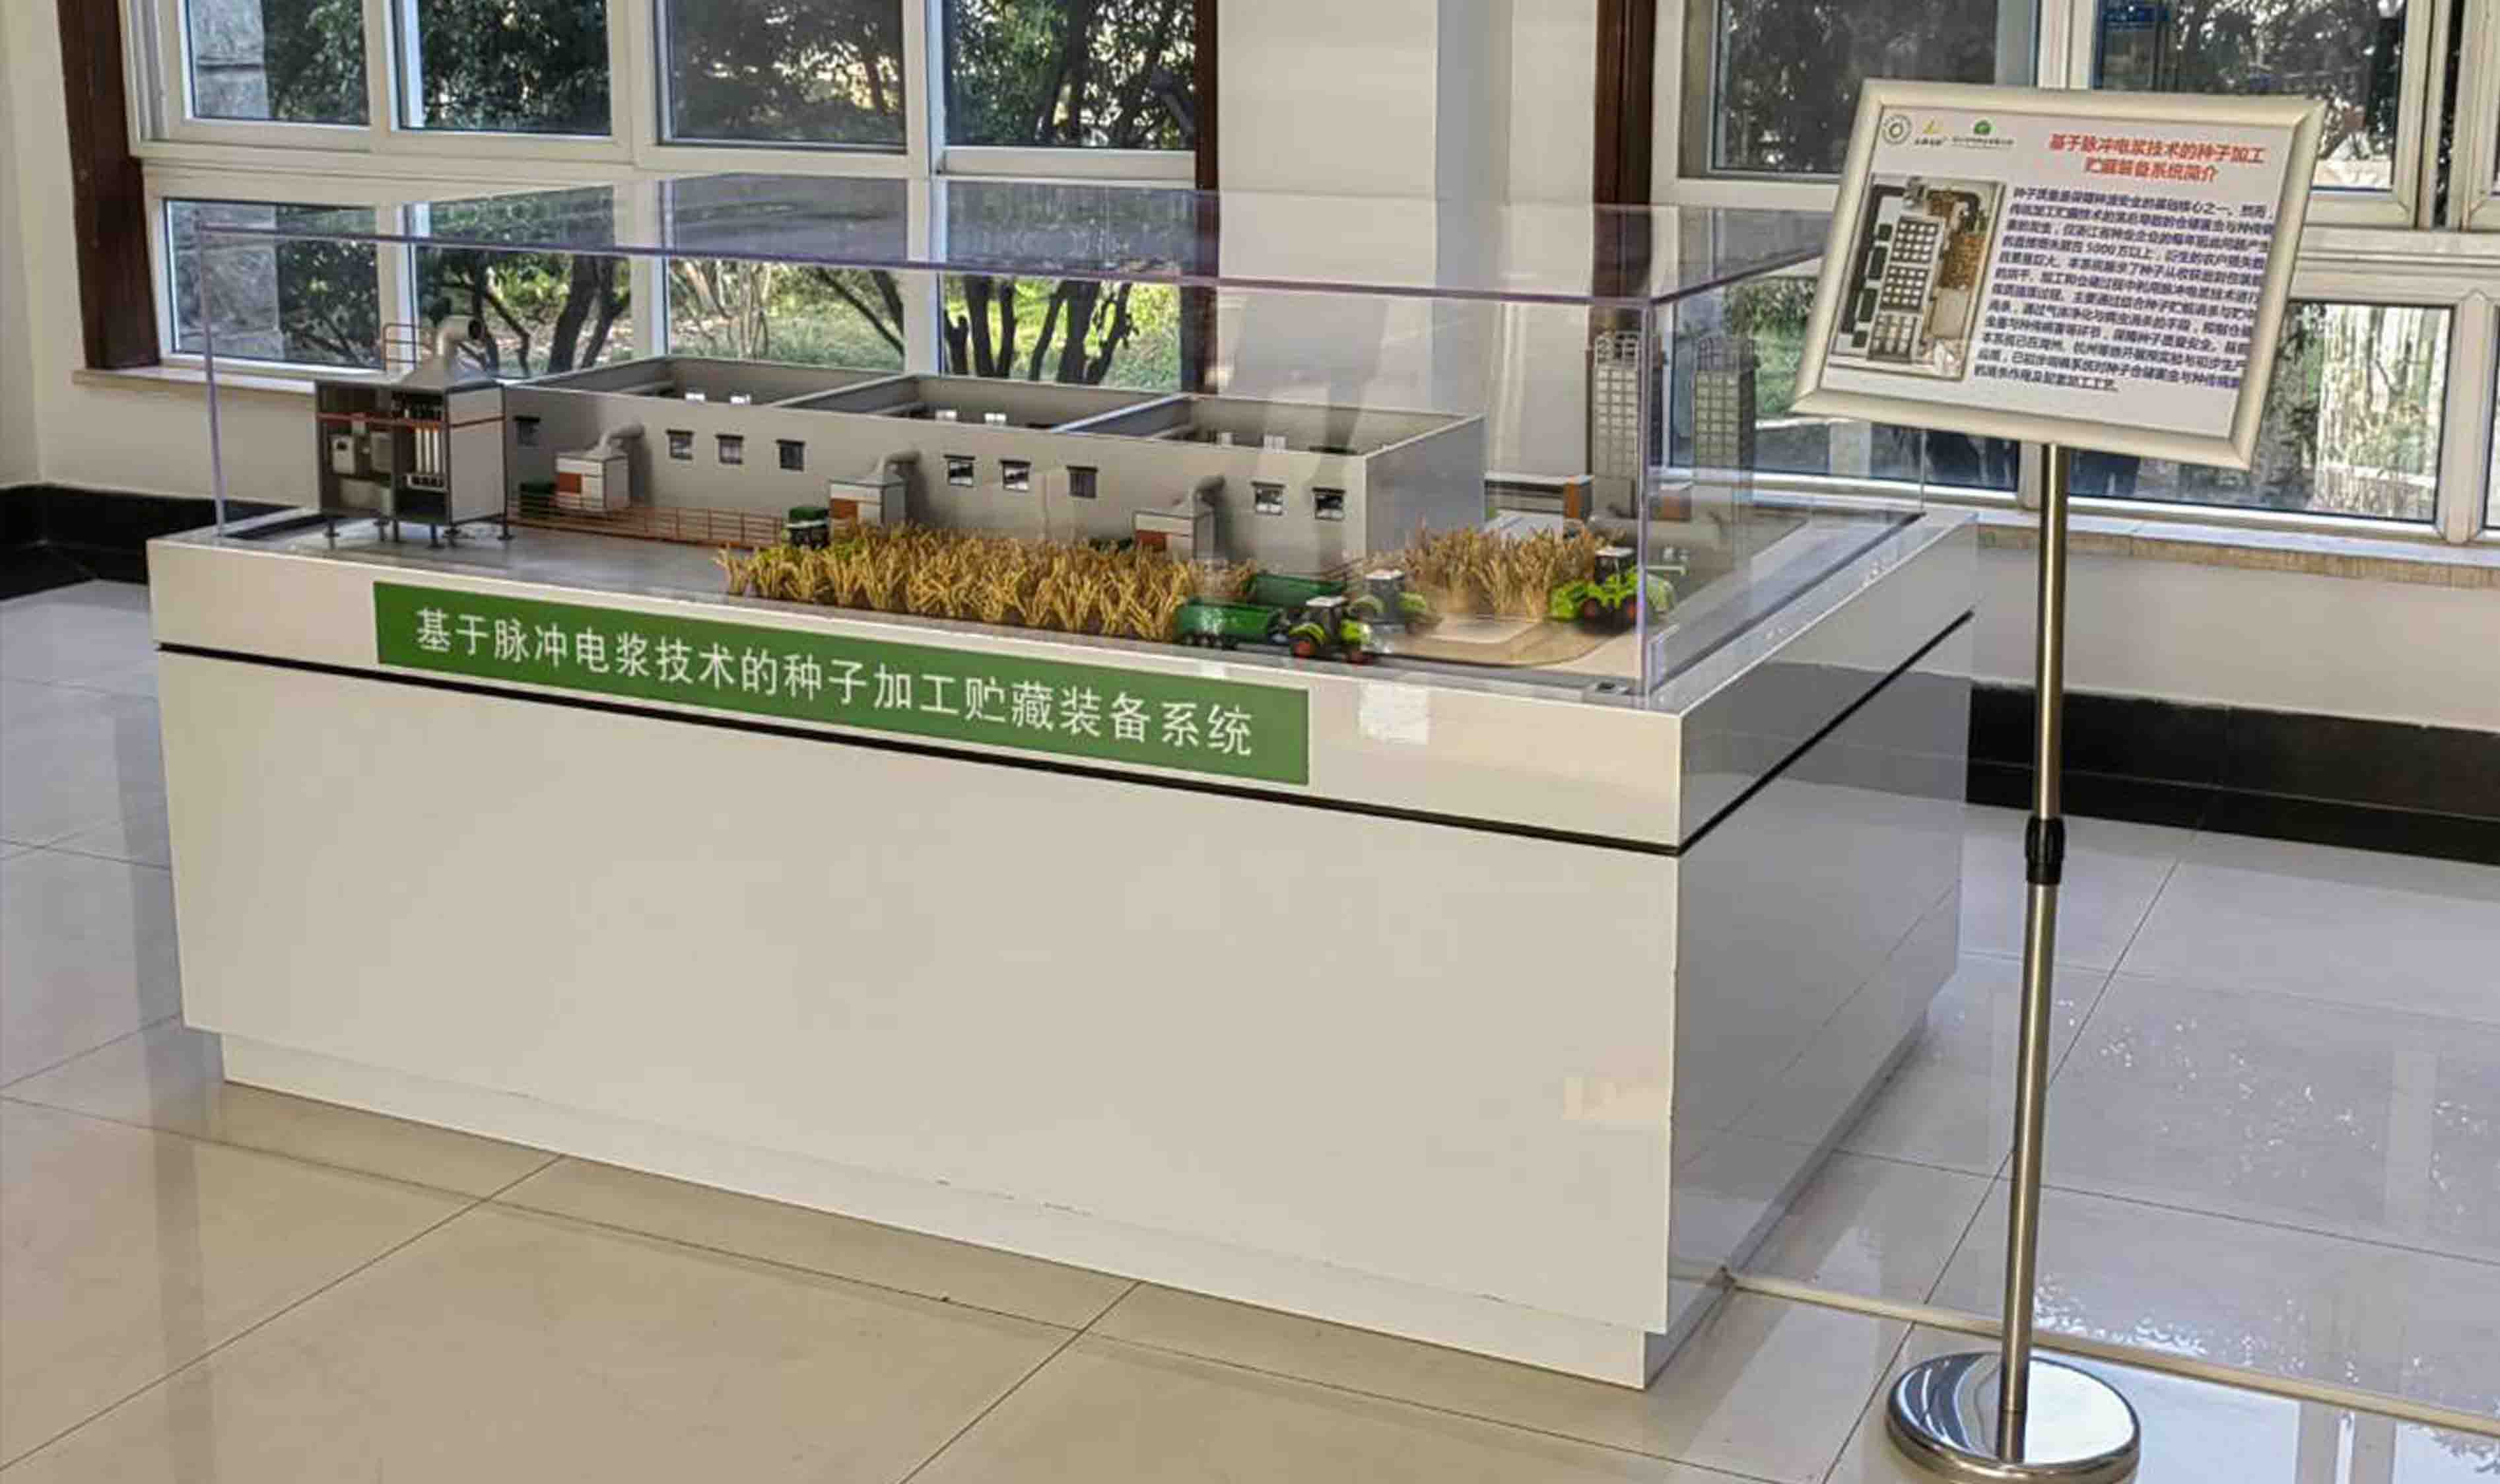 技术国际领先。浙江省农业厅重大科技项目。